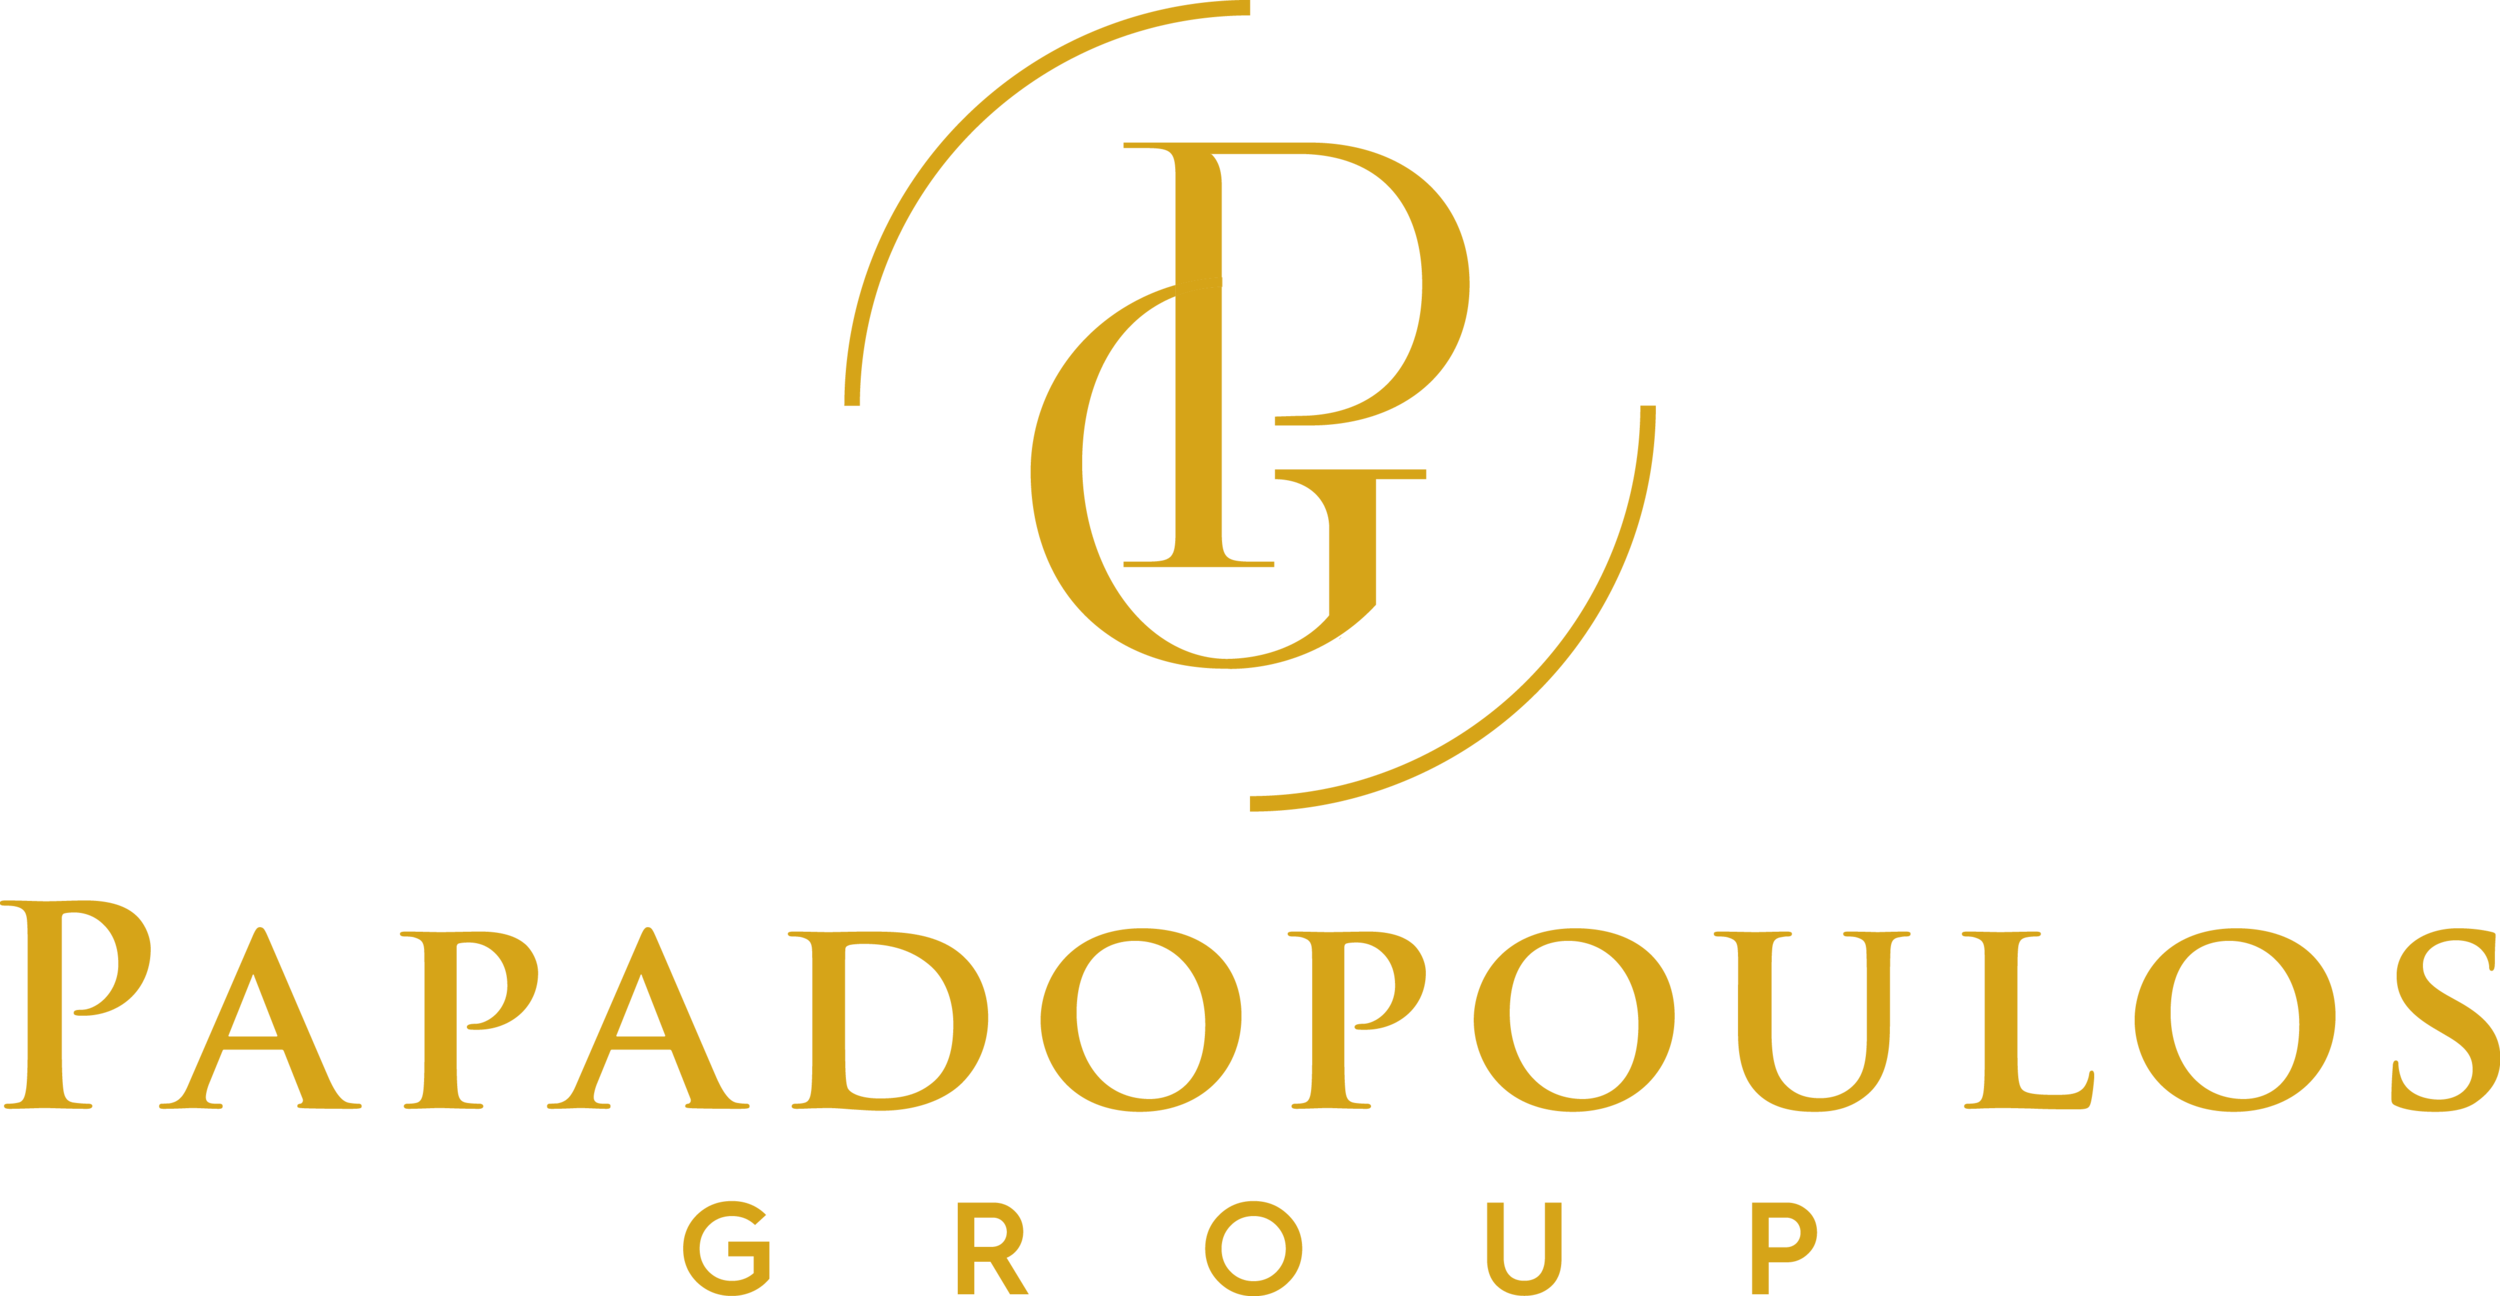 Papadopoulos Group